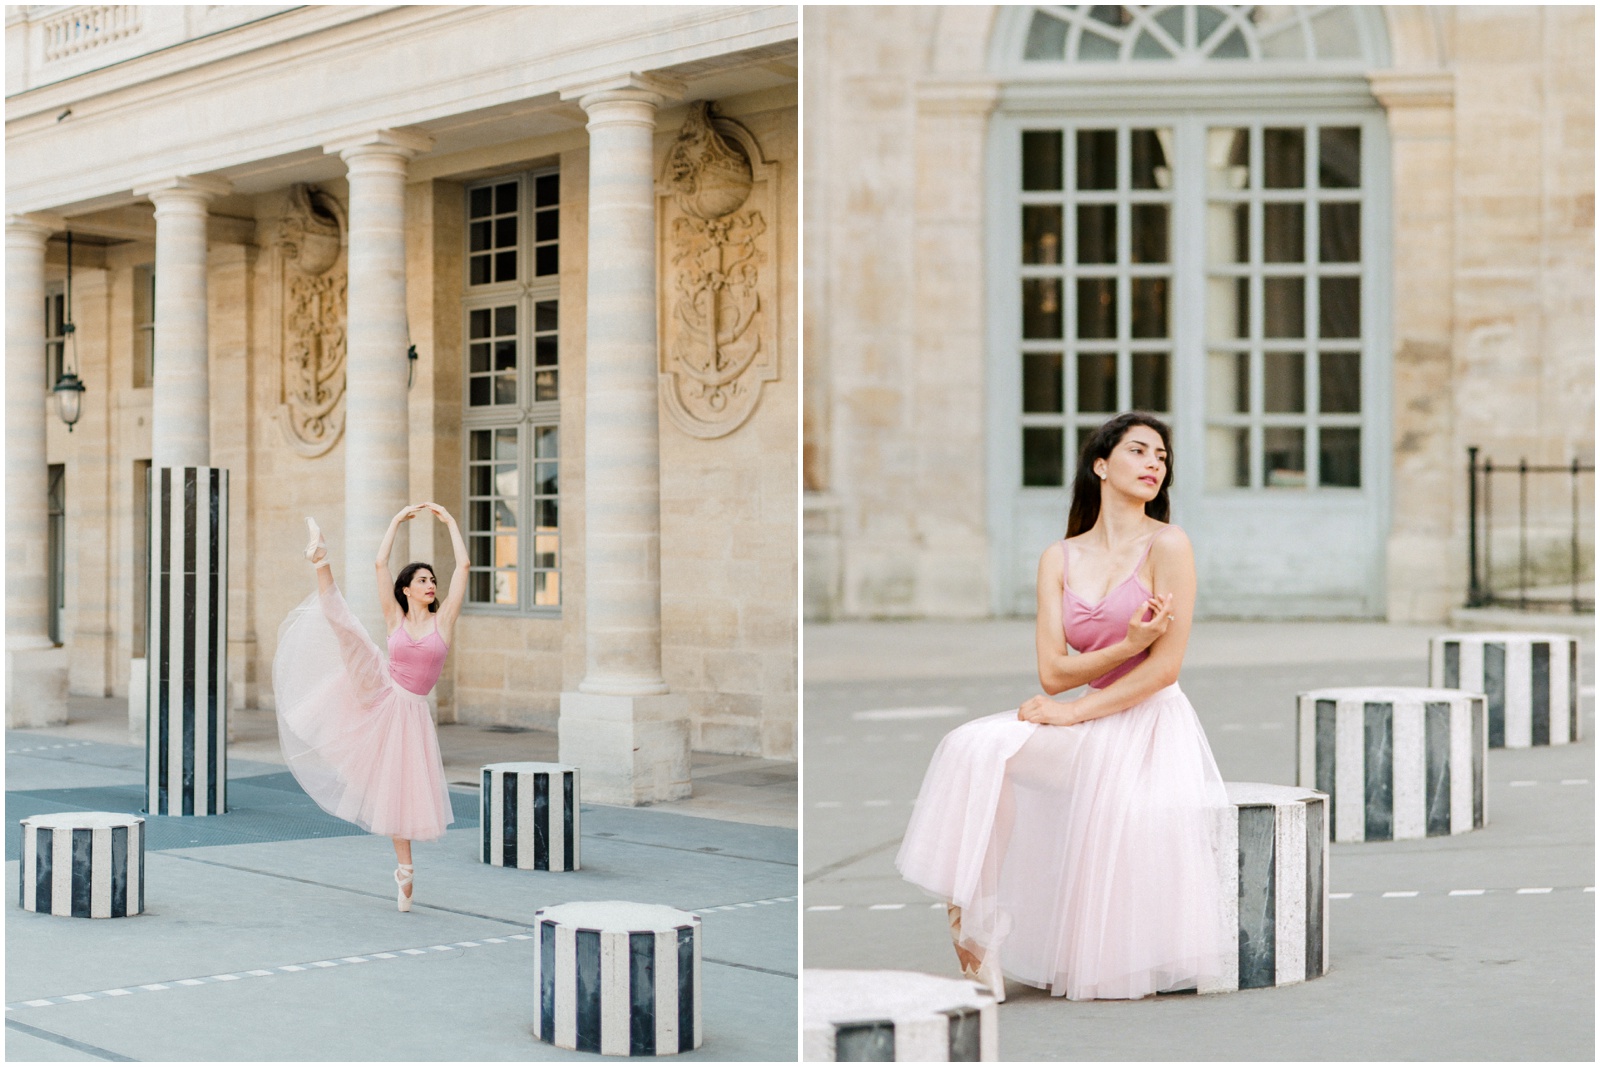 Ballerina in Paris in pink skirt